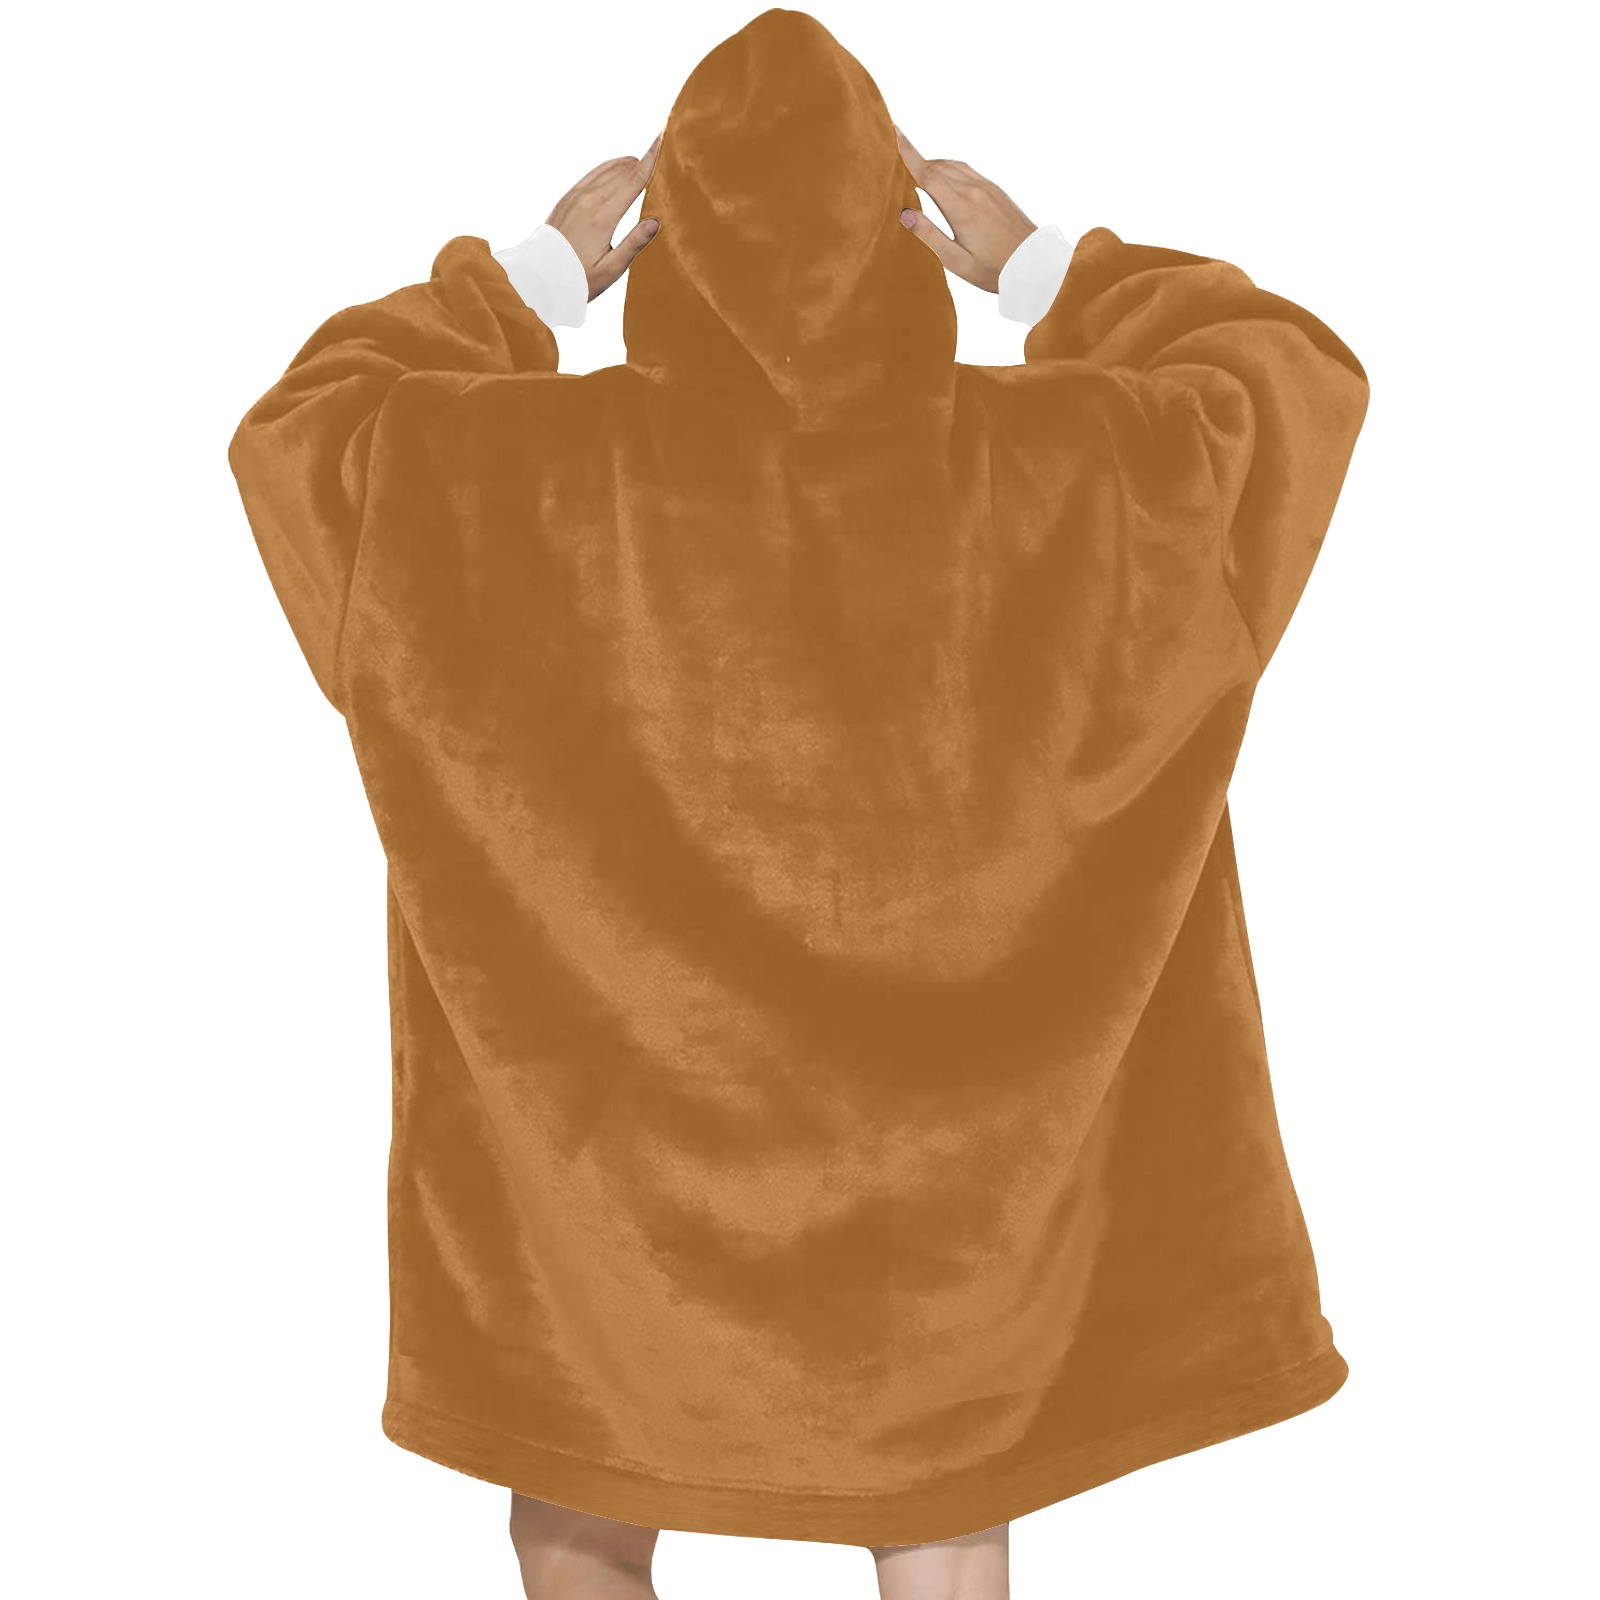 Sudan Brown Blanket Hoodie for Women